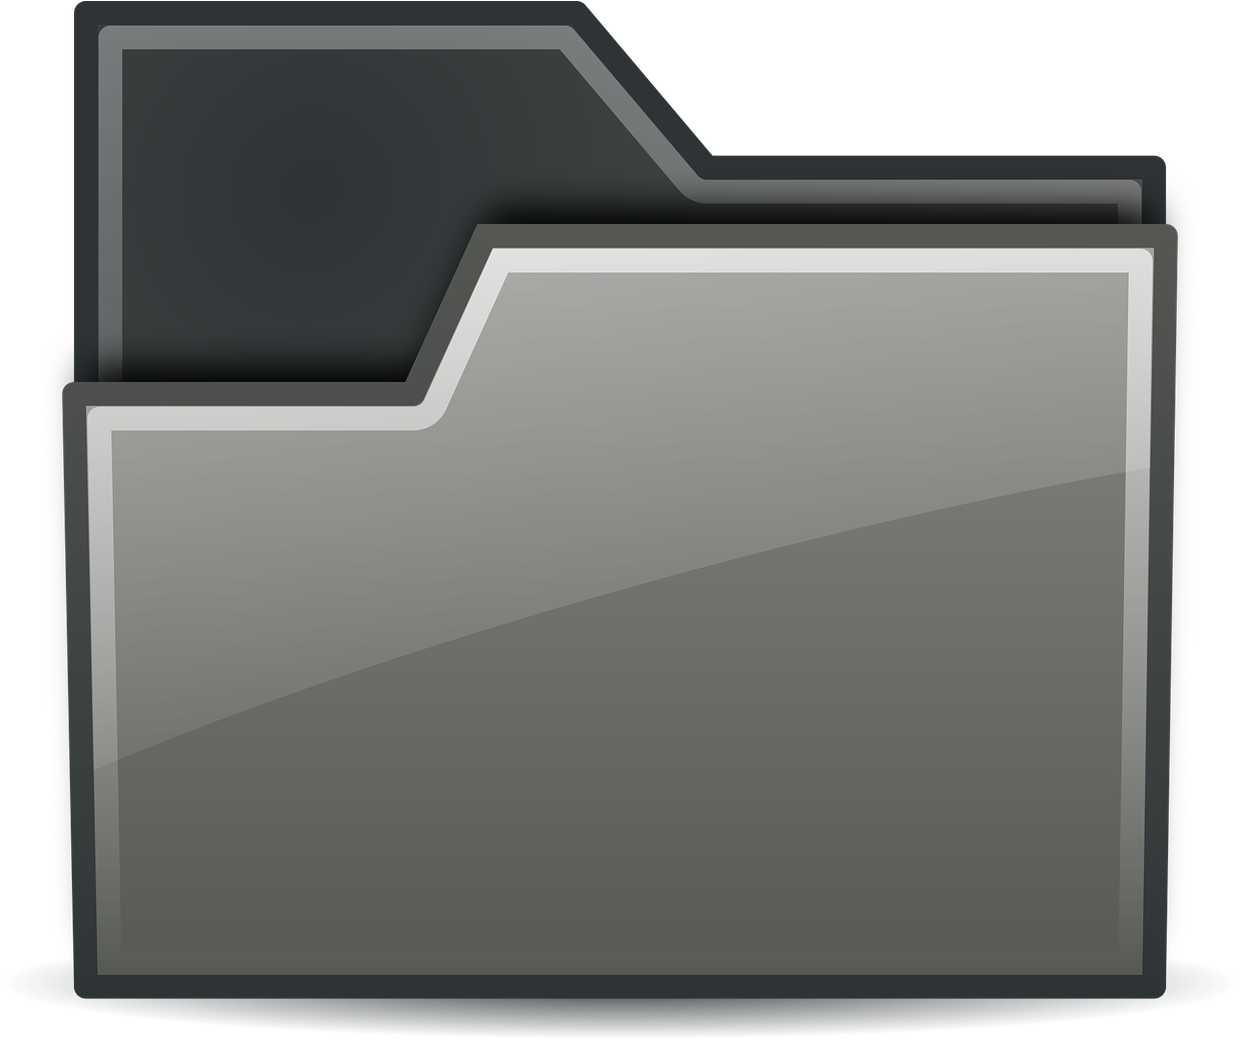 Digital File Folder Icon PNG image